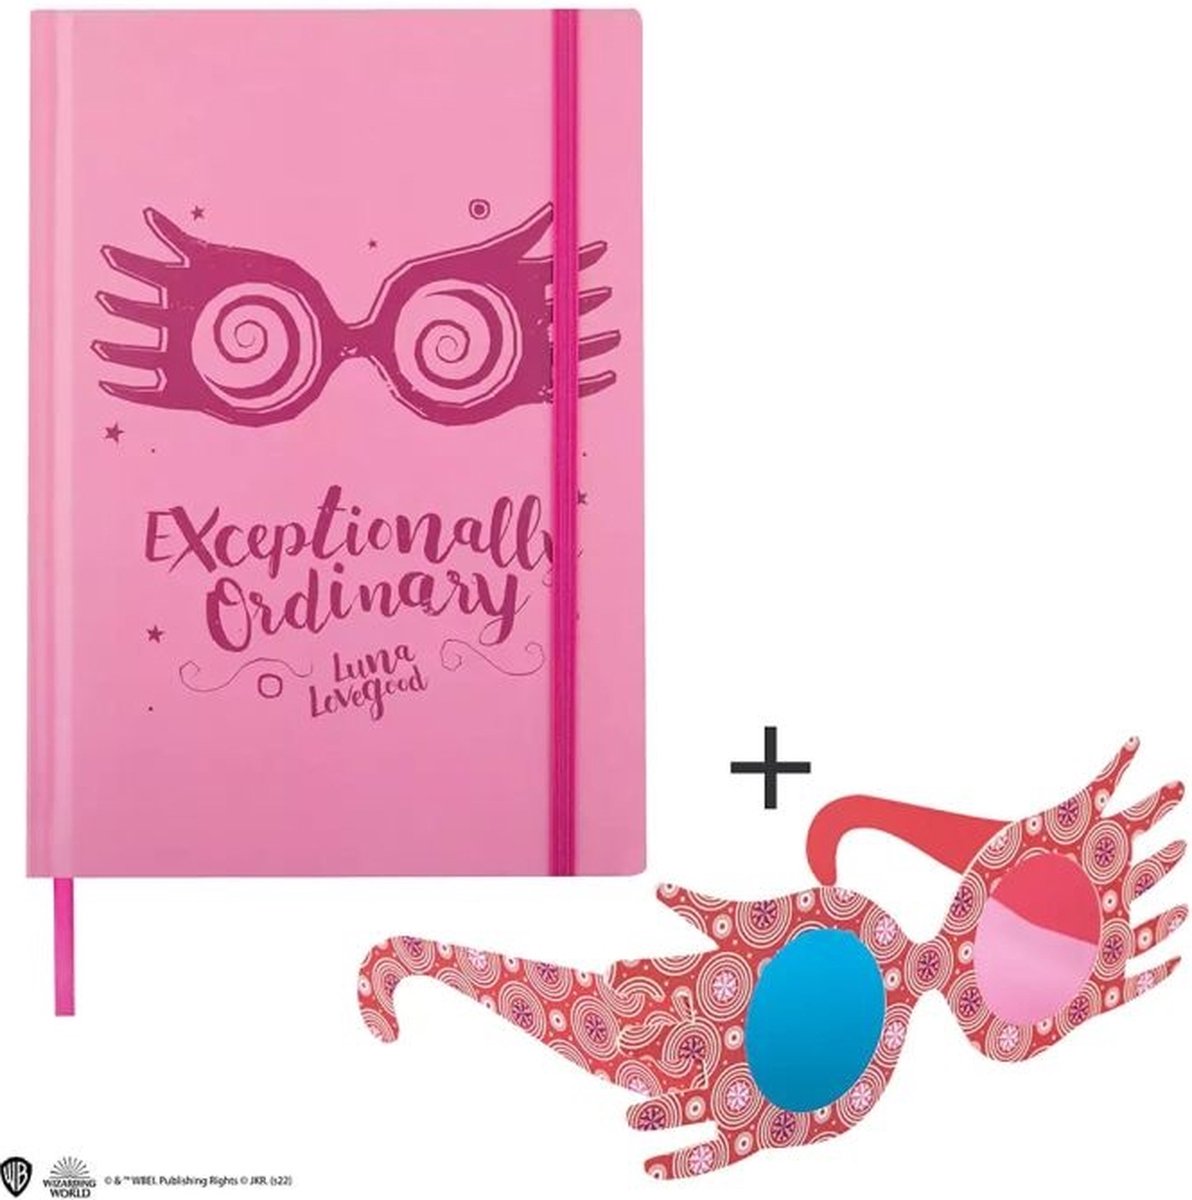 Cinereplicas Luna Lovegood / Loena Leeflang notebook and bookmark - Harry Potter